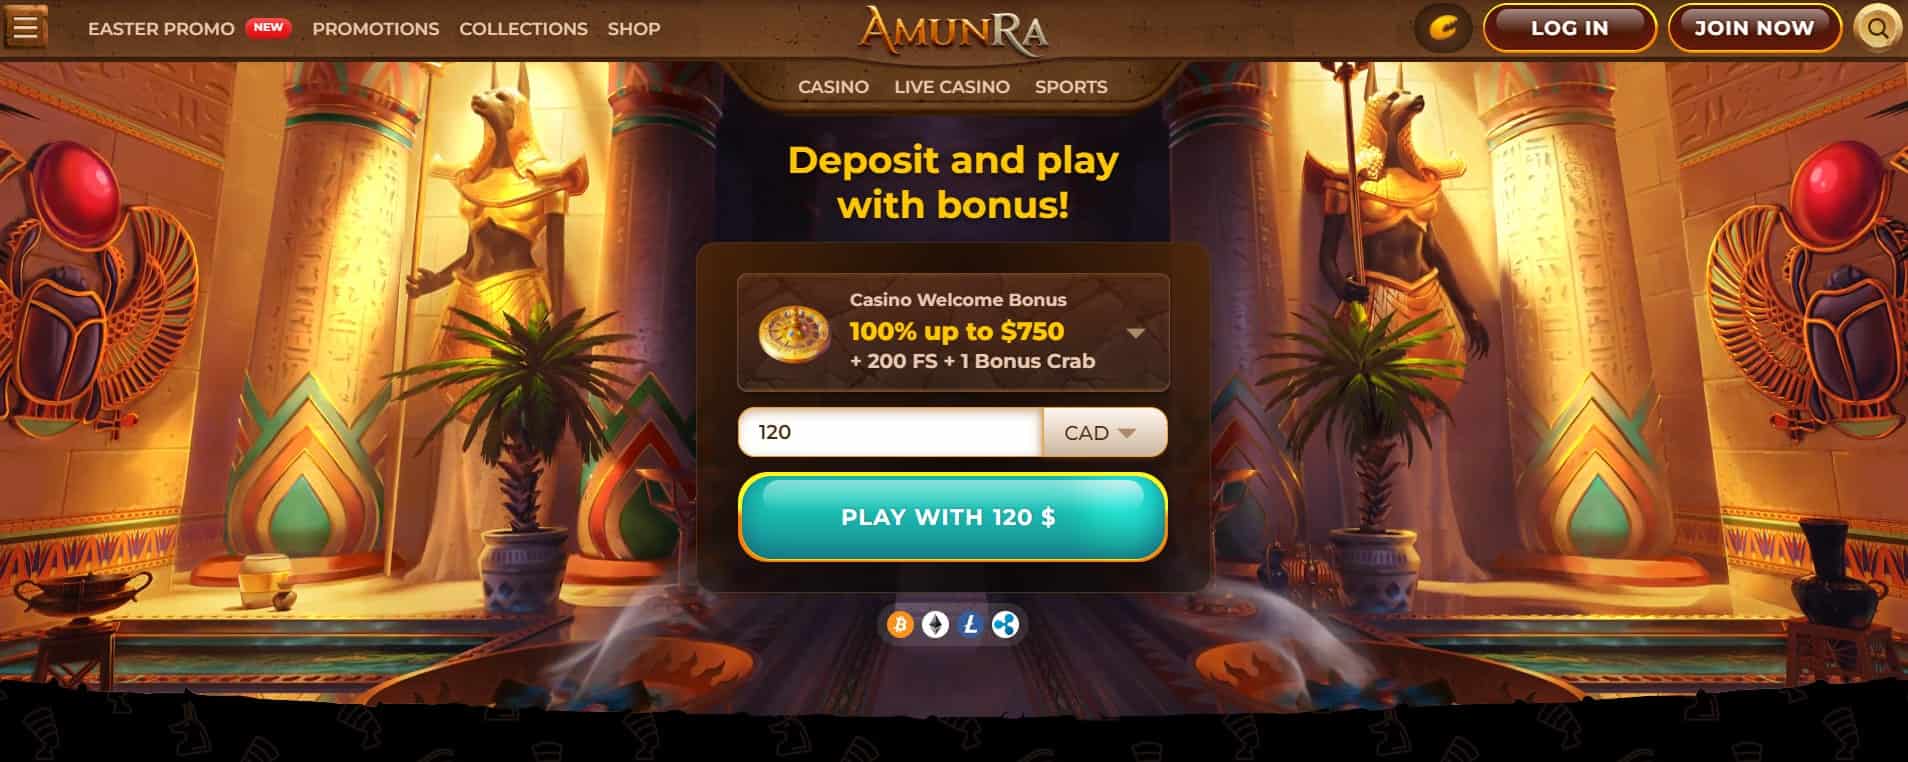 amunra casino main page